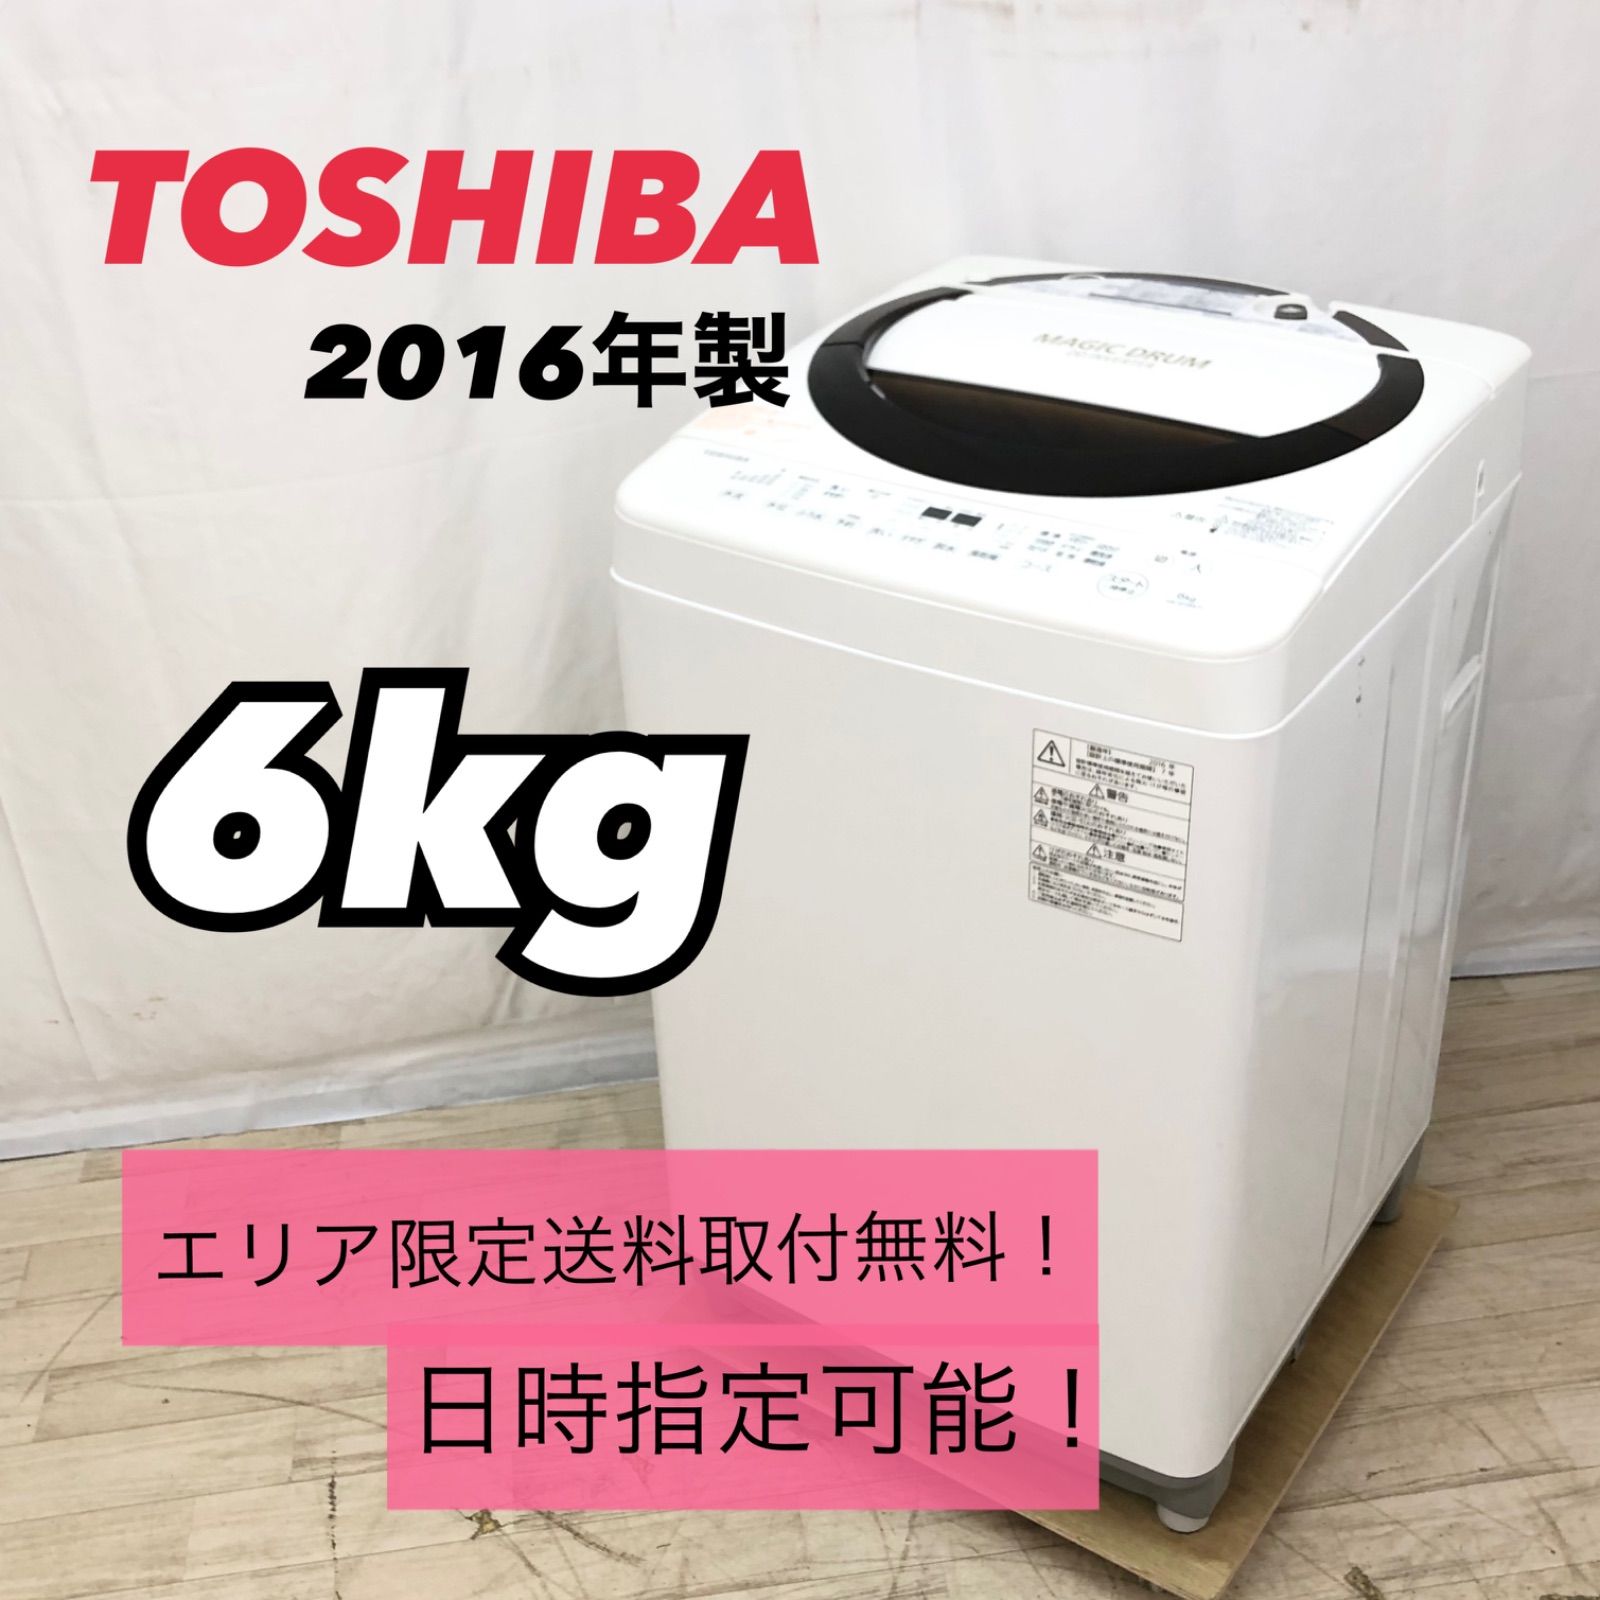 2017年式 6kg TOSHIBA 洗濯機 AW-6D6家電のレンタル